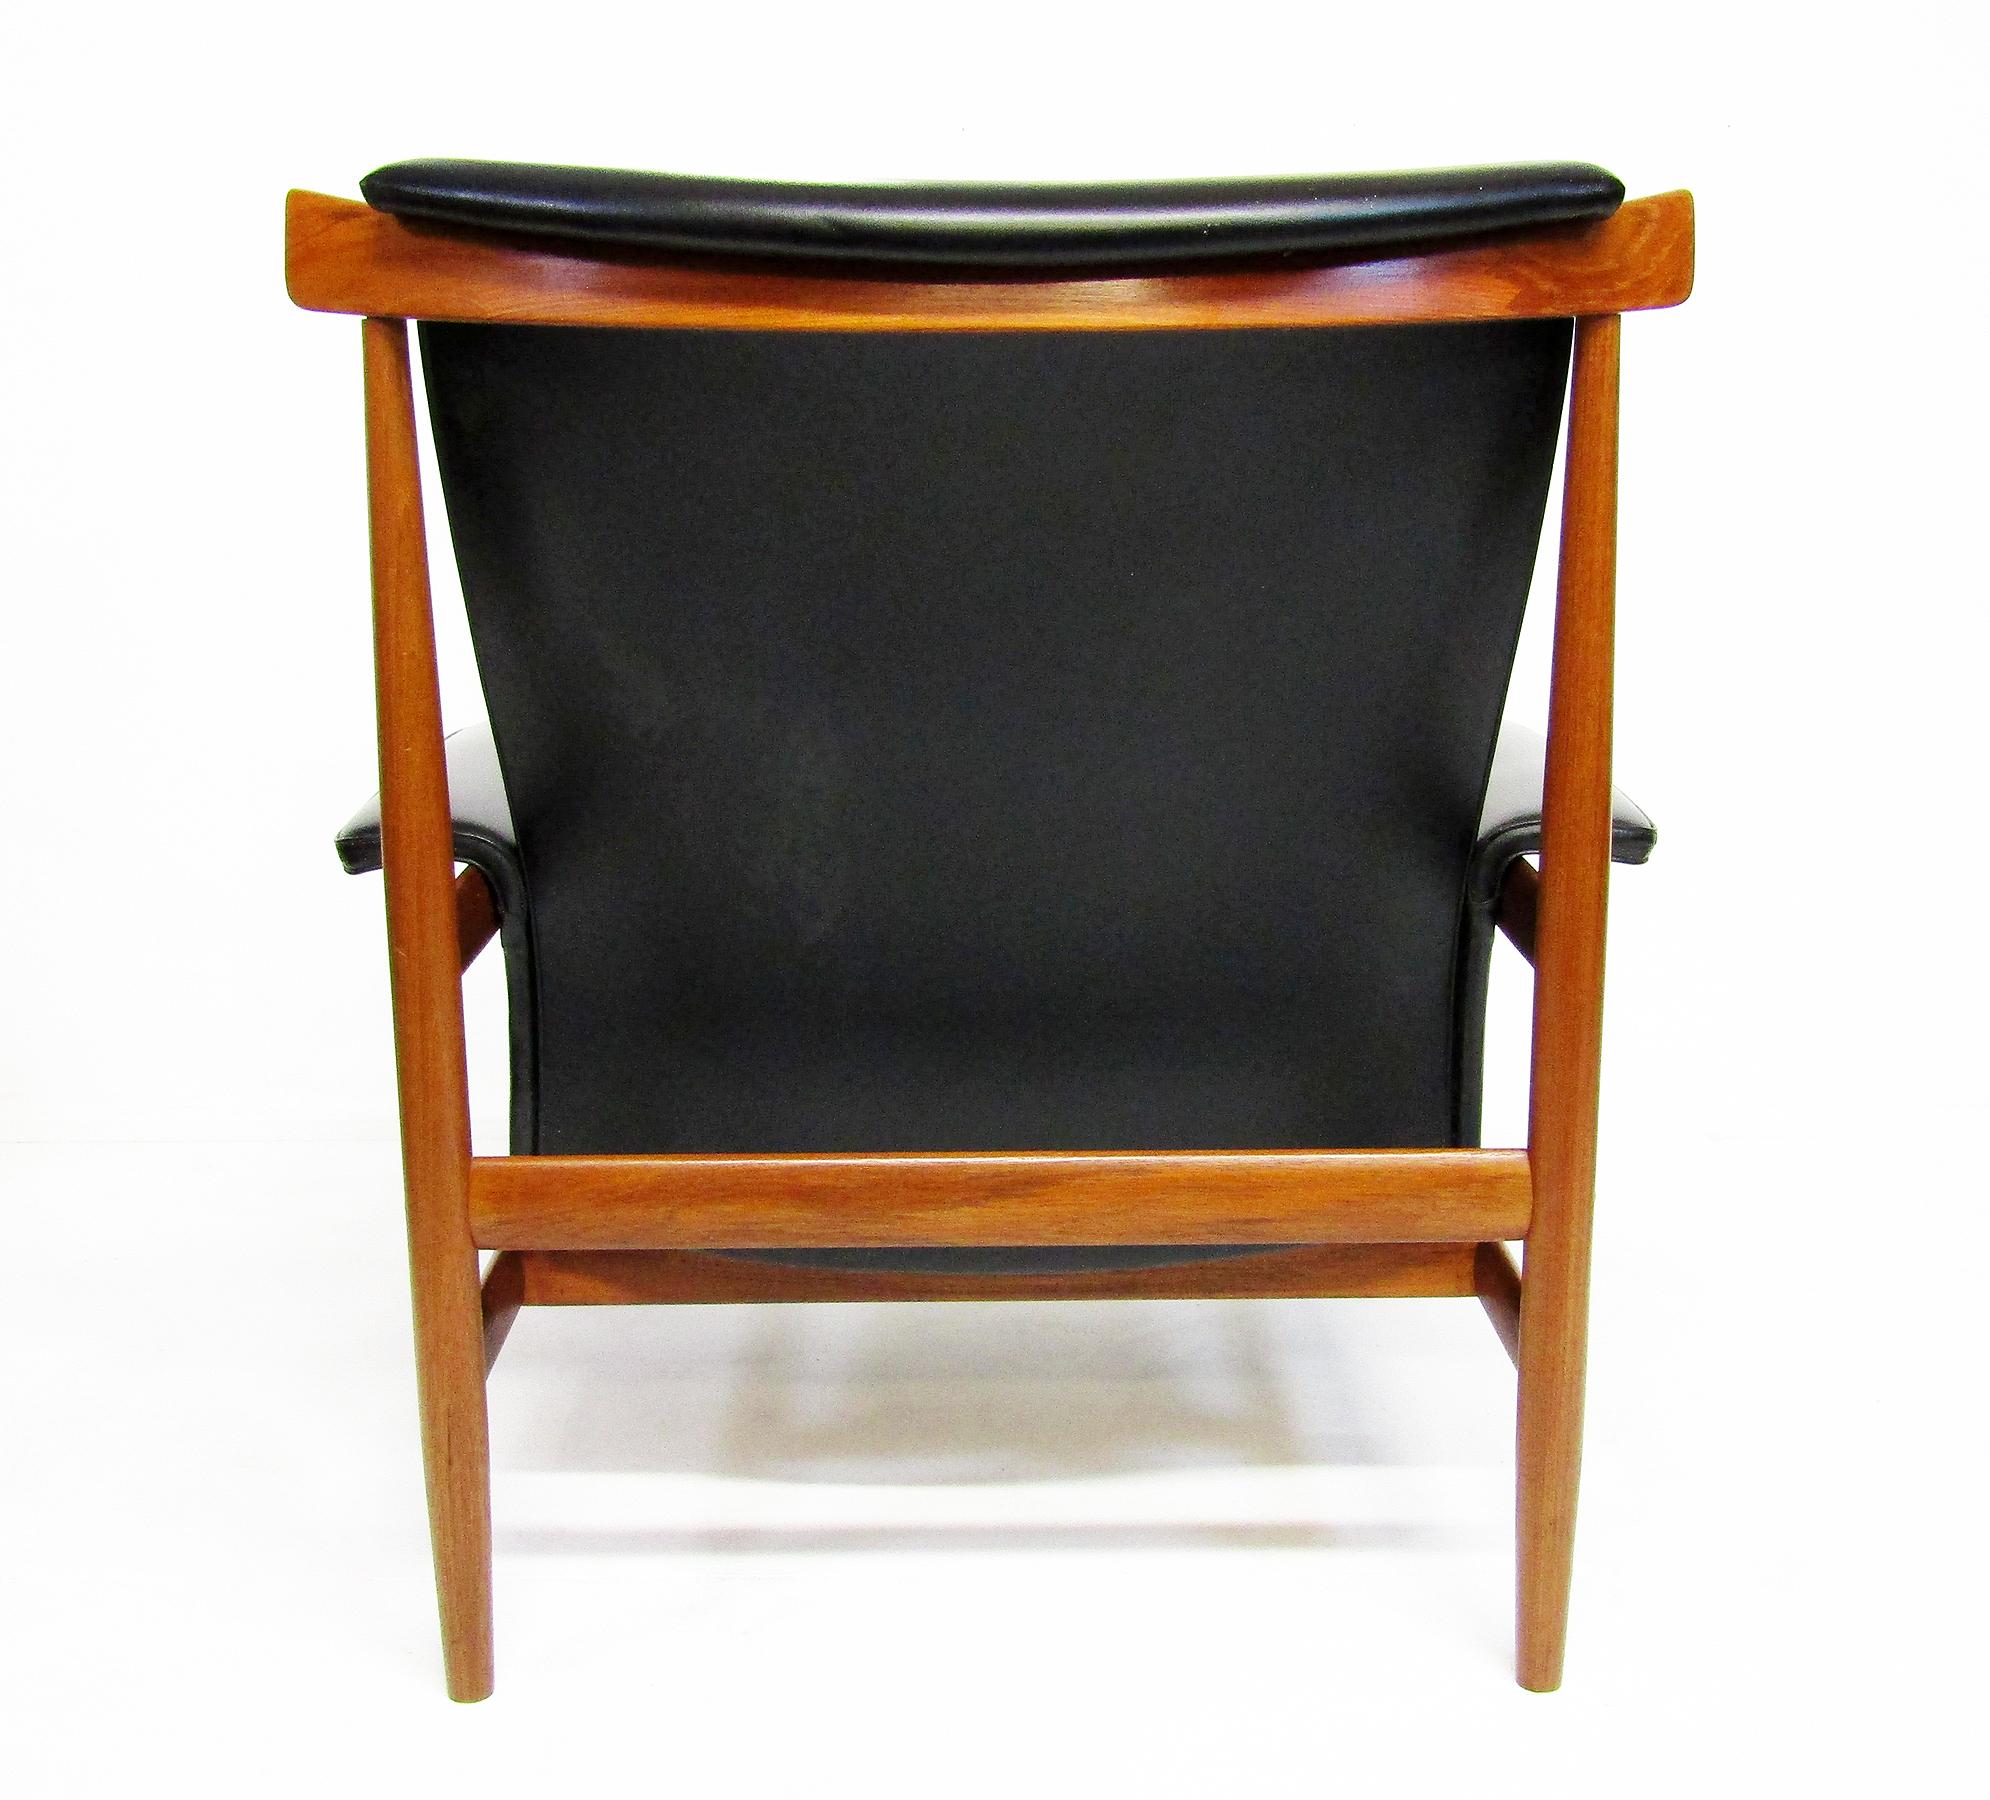 1960s Danish Bwana Chair & Ottoman By Finn Juhl In Teak & Skai For Sale 7